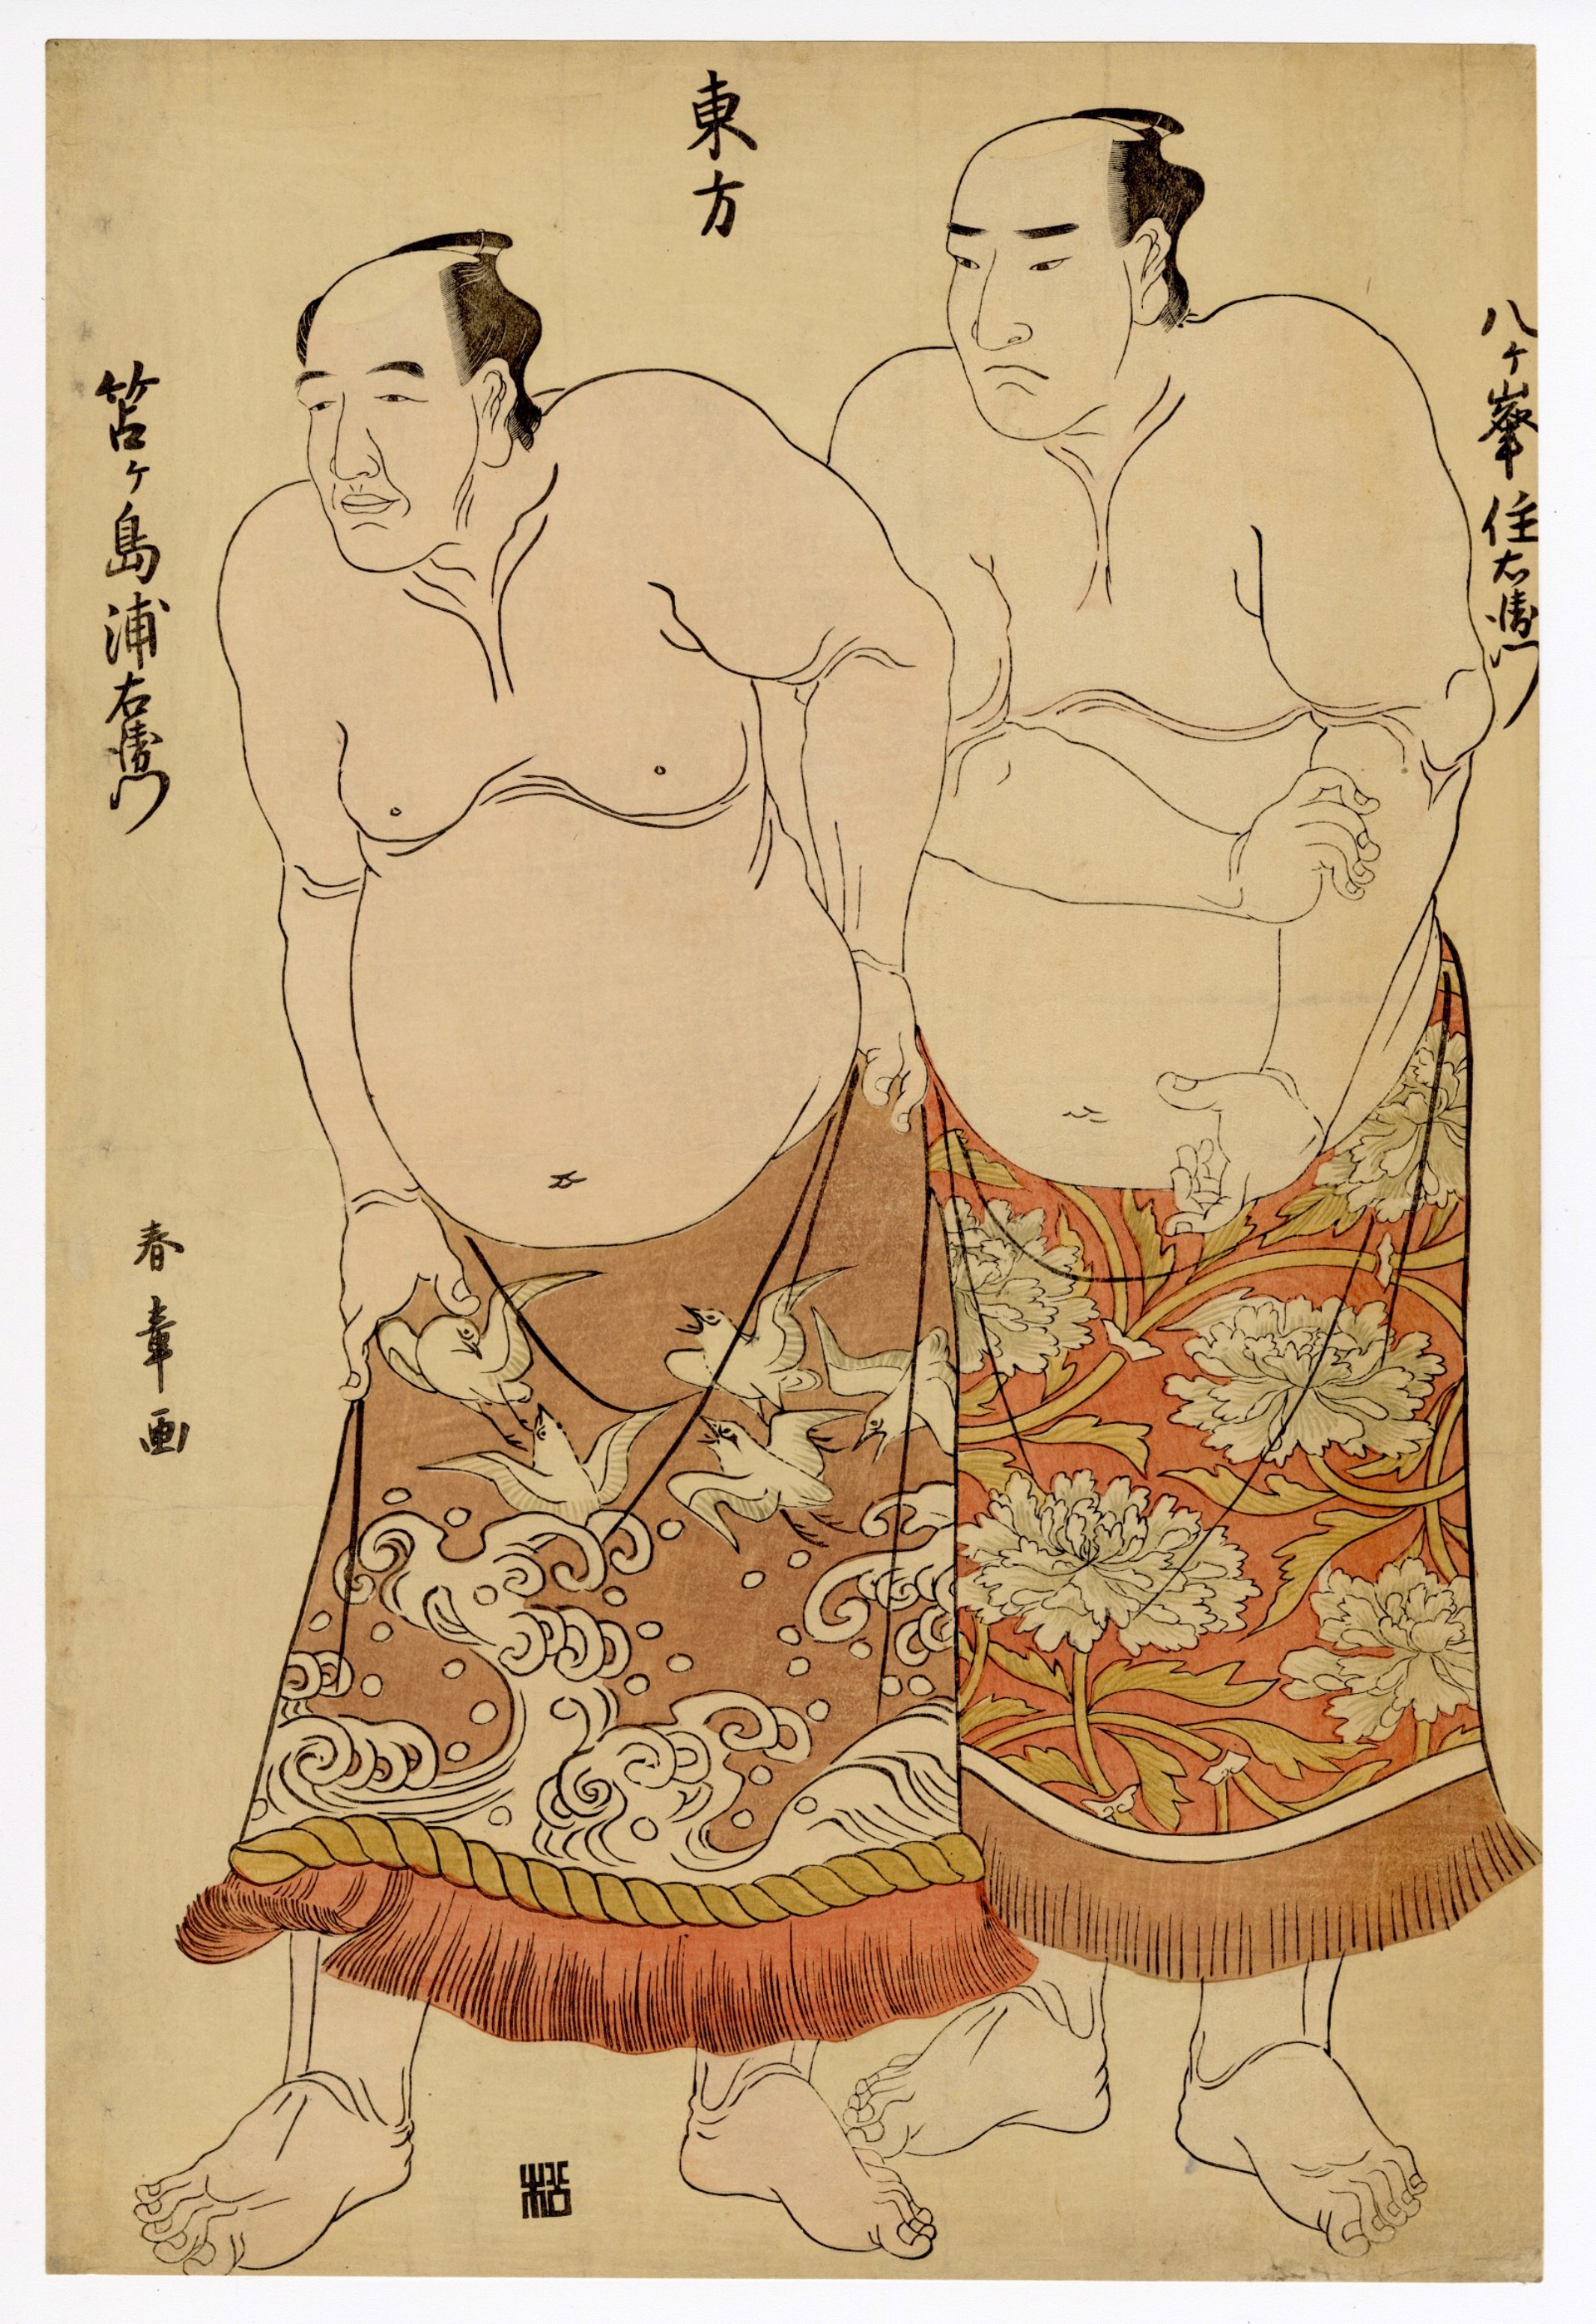 East Side Wrestlers YatsugamineJuemon (Fukuoka) and Chogashima Uraemon (Tokushima) by Shunsho